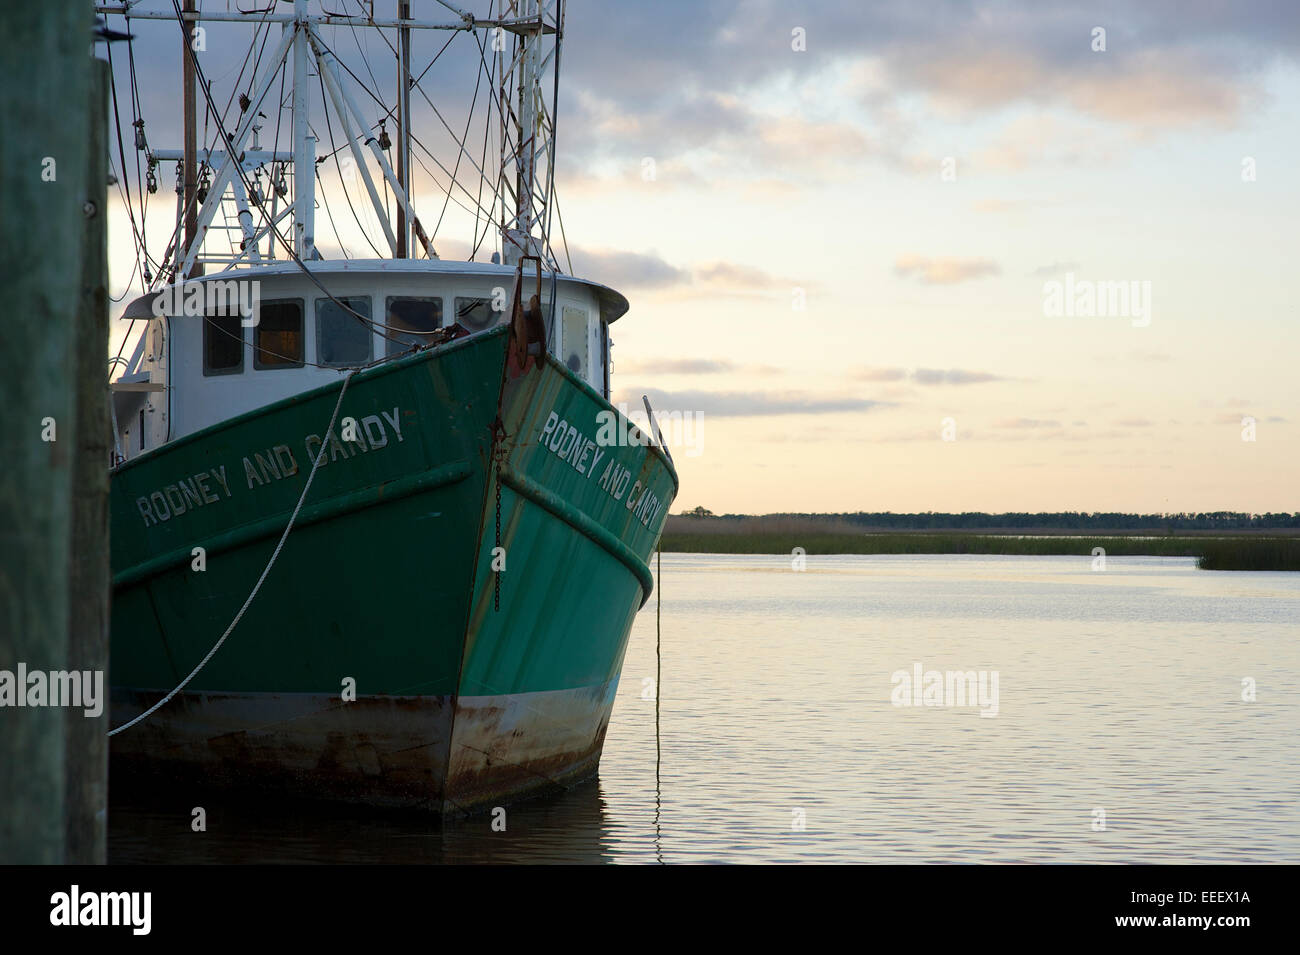 Shrimp boat, Apalachicola, Florida Stock Photo